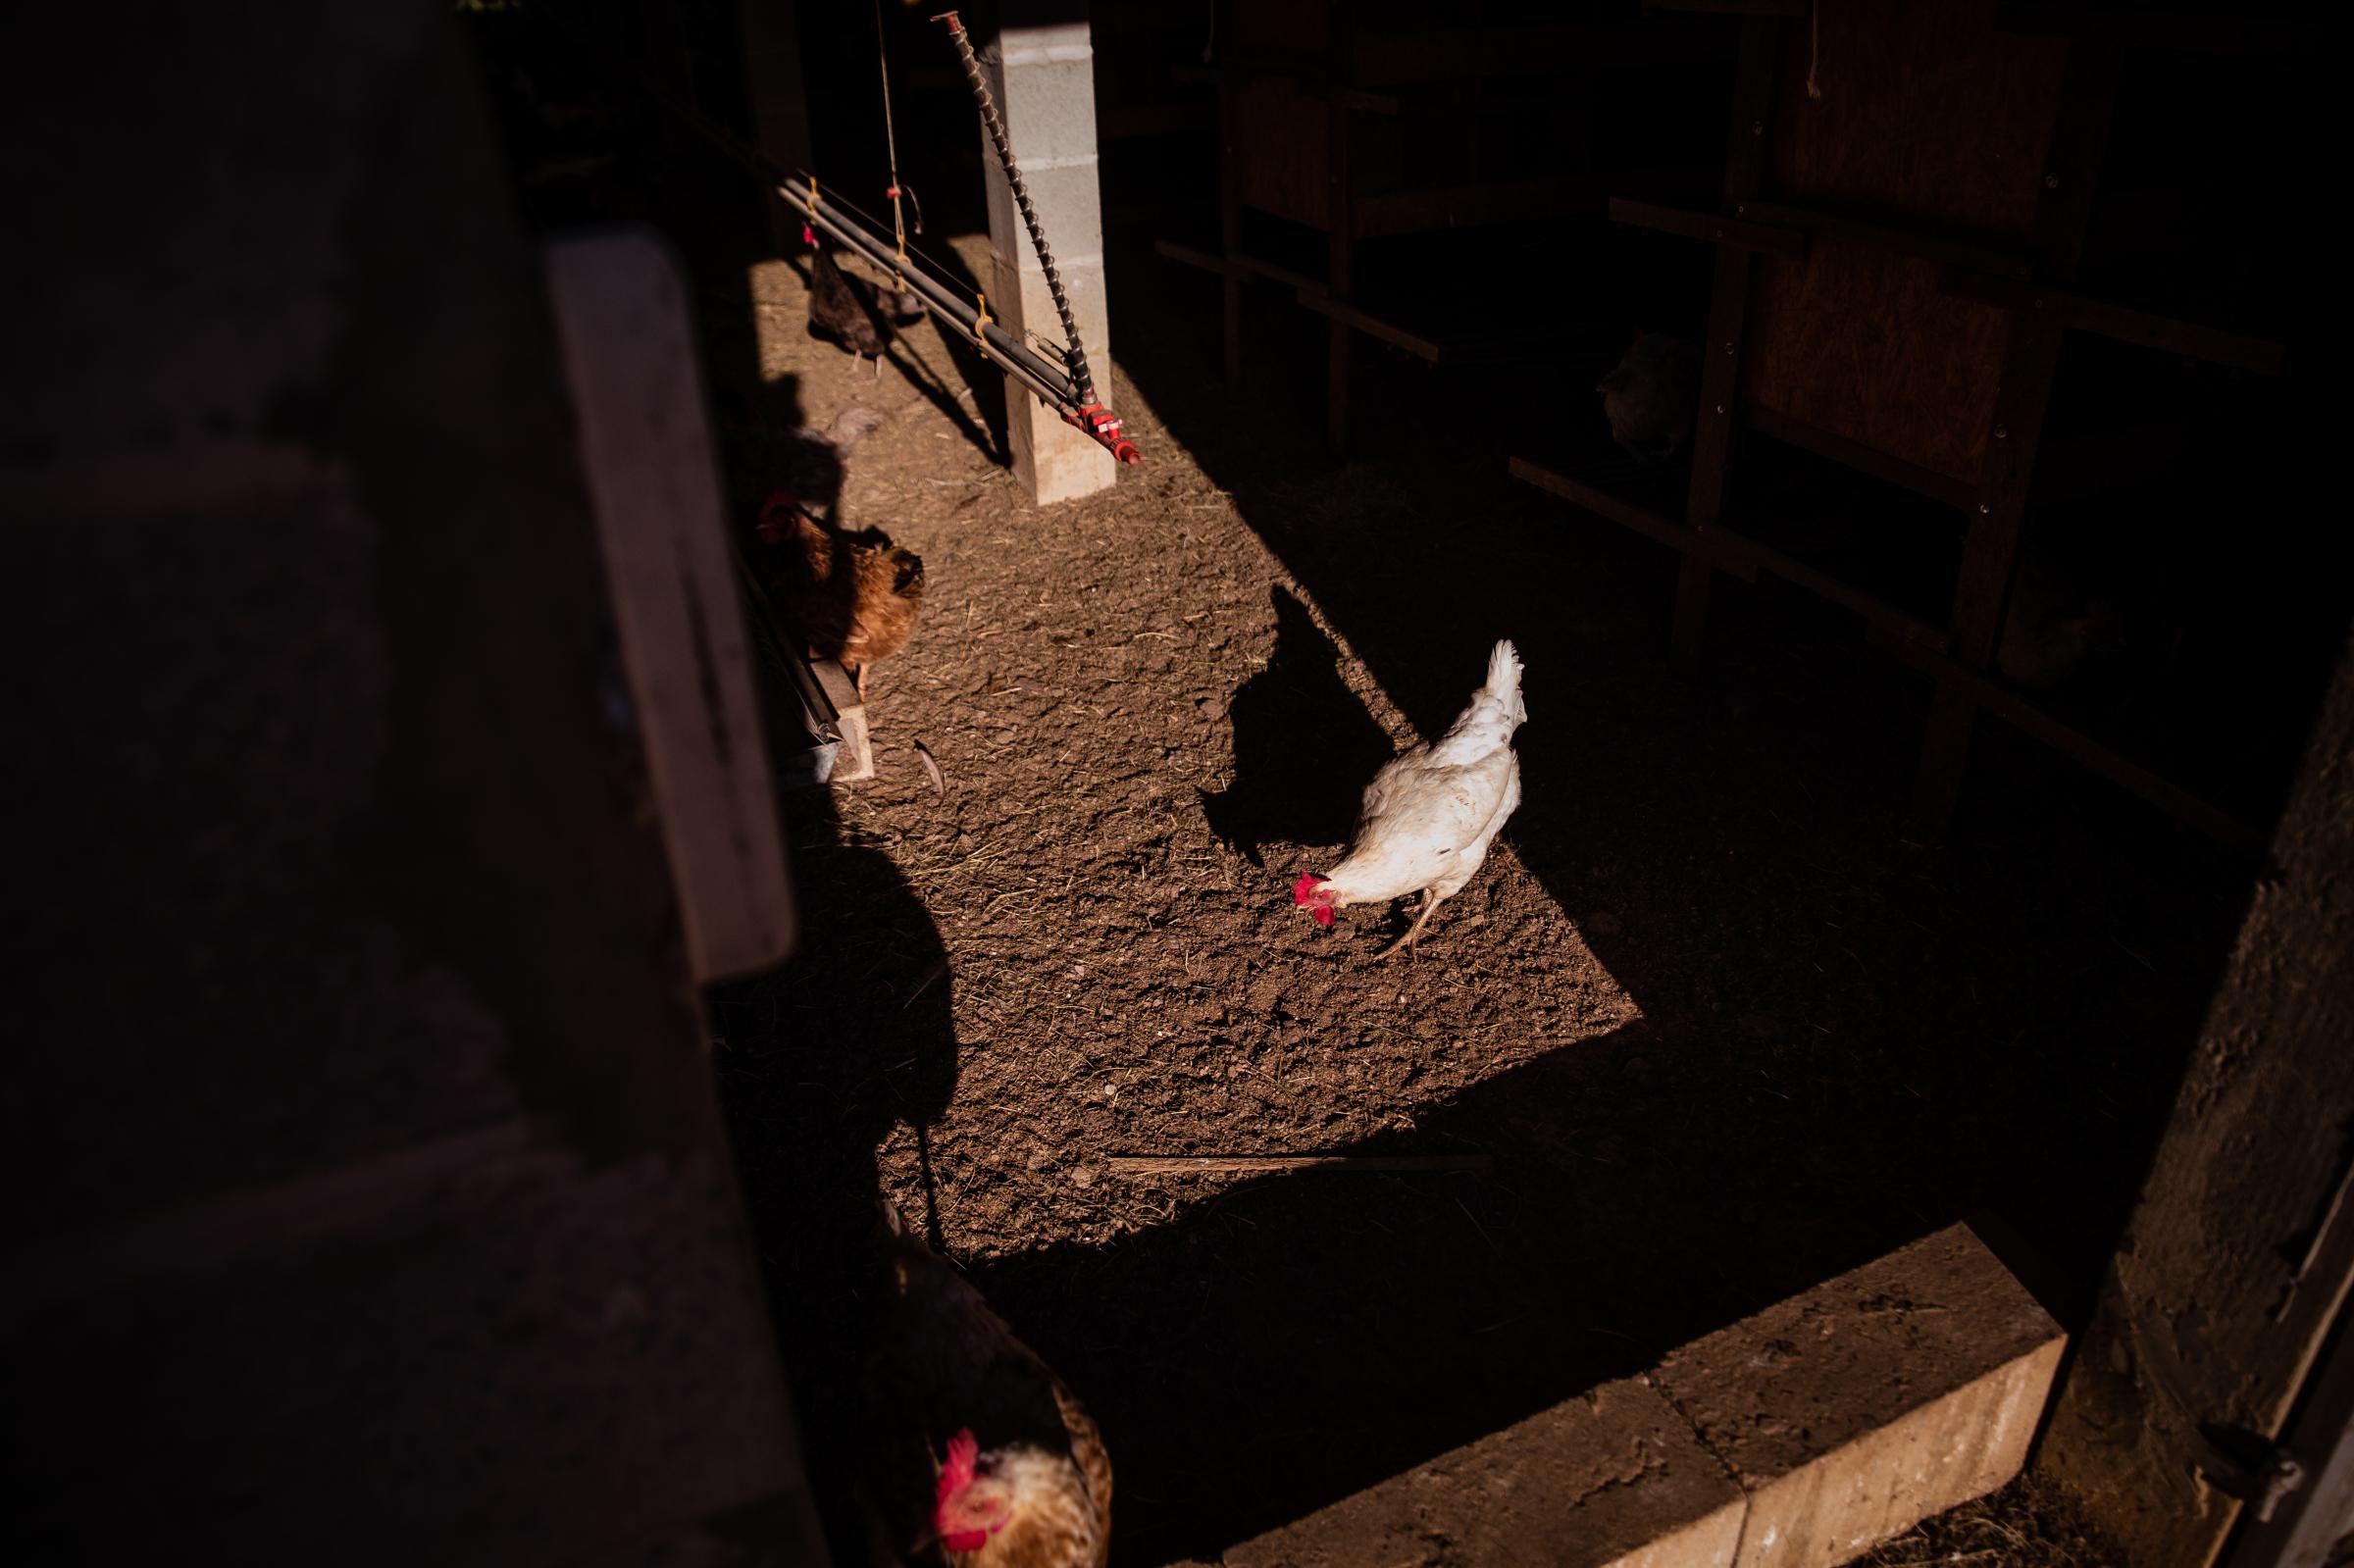 Life of a chicken farm during the Covid-19 pandemic in Brazil - Galinhas pastando dentro do galinheiro  em uma pequena...